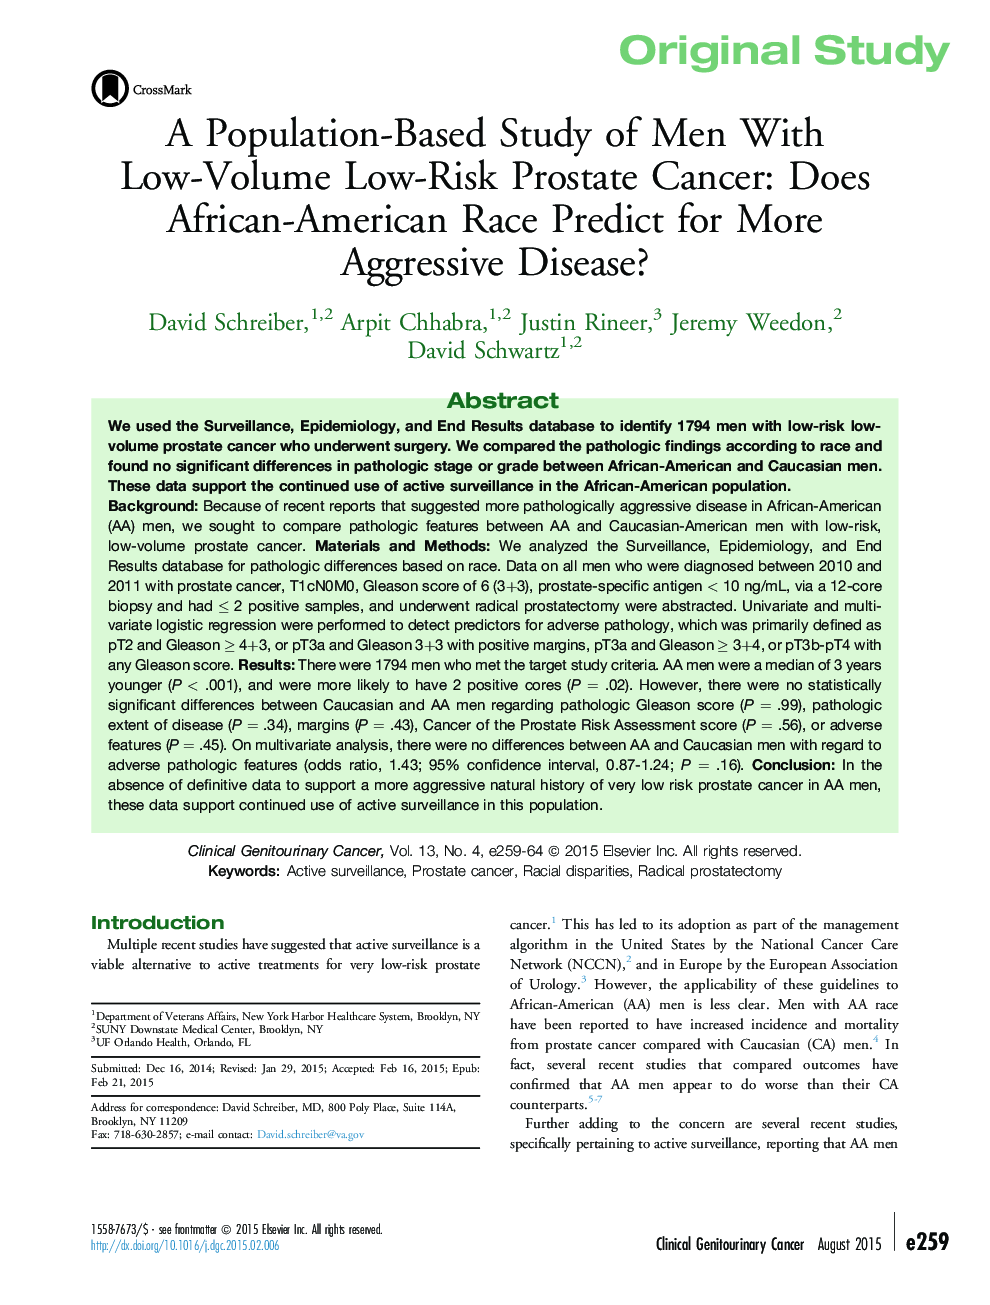 یک تحقیق مبتنی بر جمعیت مردان مبتلا به سرطان پروستات با کمبود ریسک: آیا نژاد آفریقایی-آمریکایی برای بیماری تهاجمی پیش بینی می شود؟ 